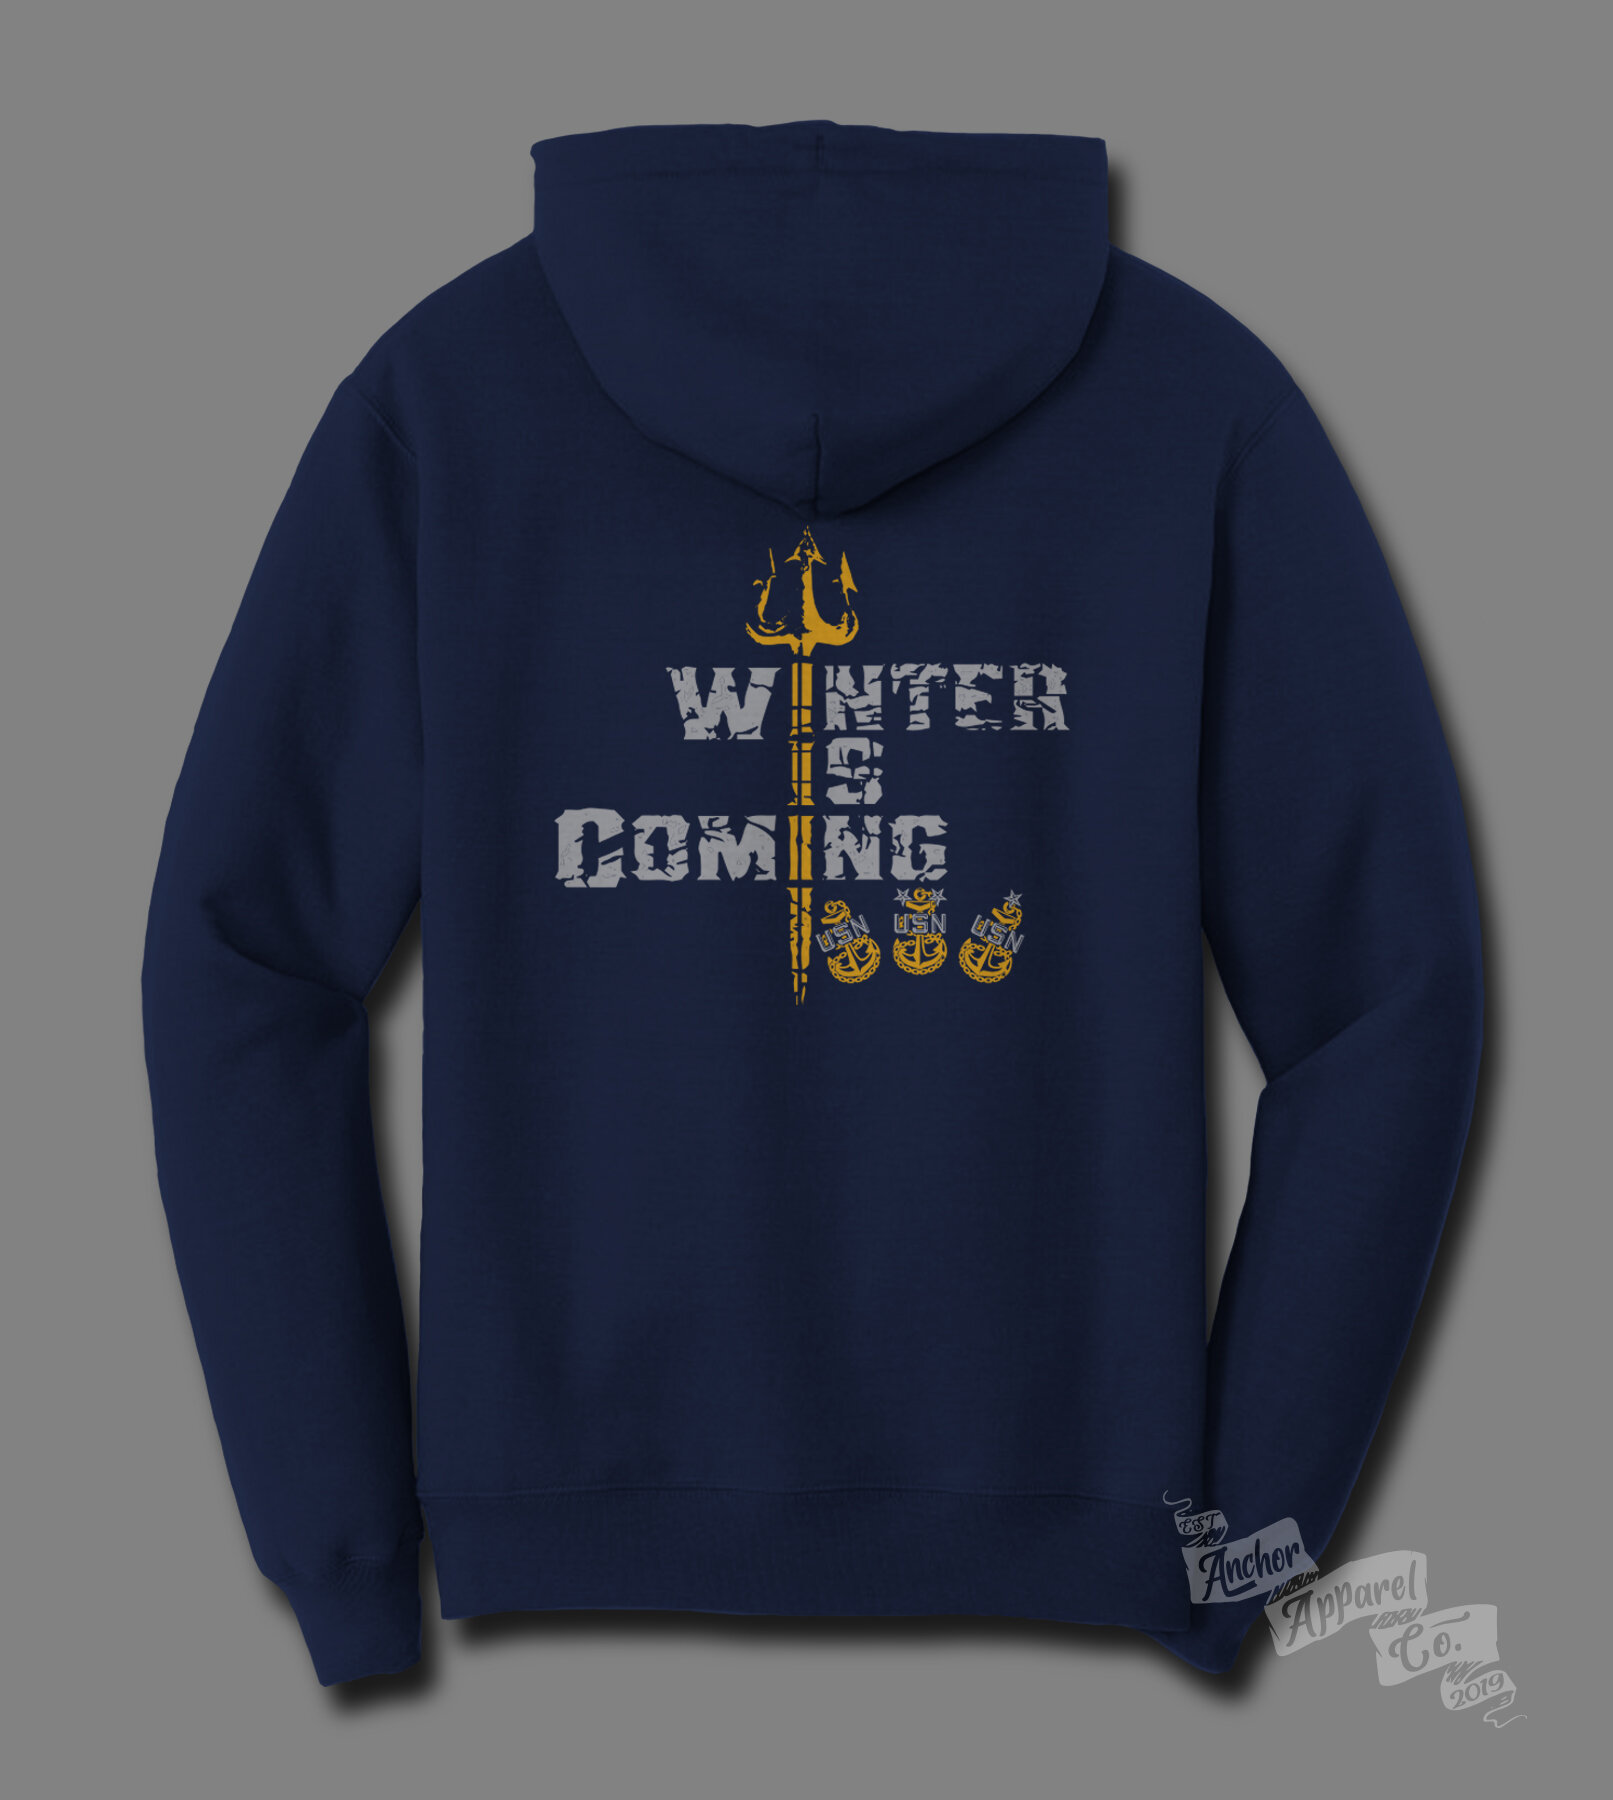 Winter Is Coming No Year back hoodie mockup 7-22-21.jpg